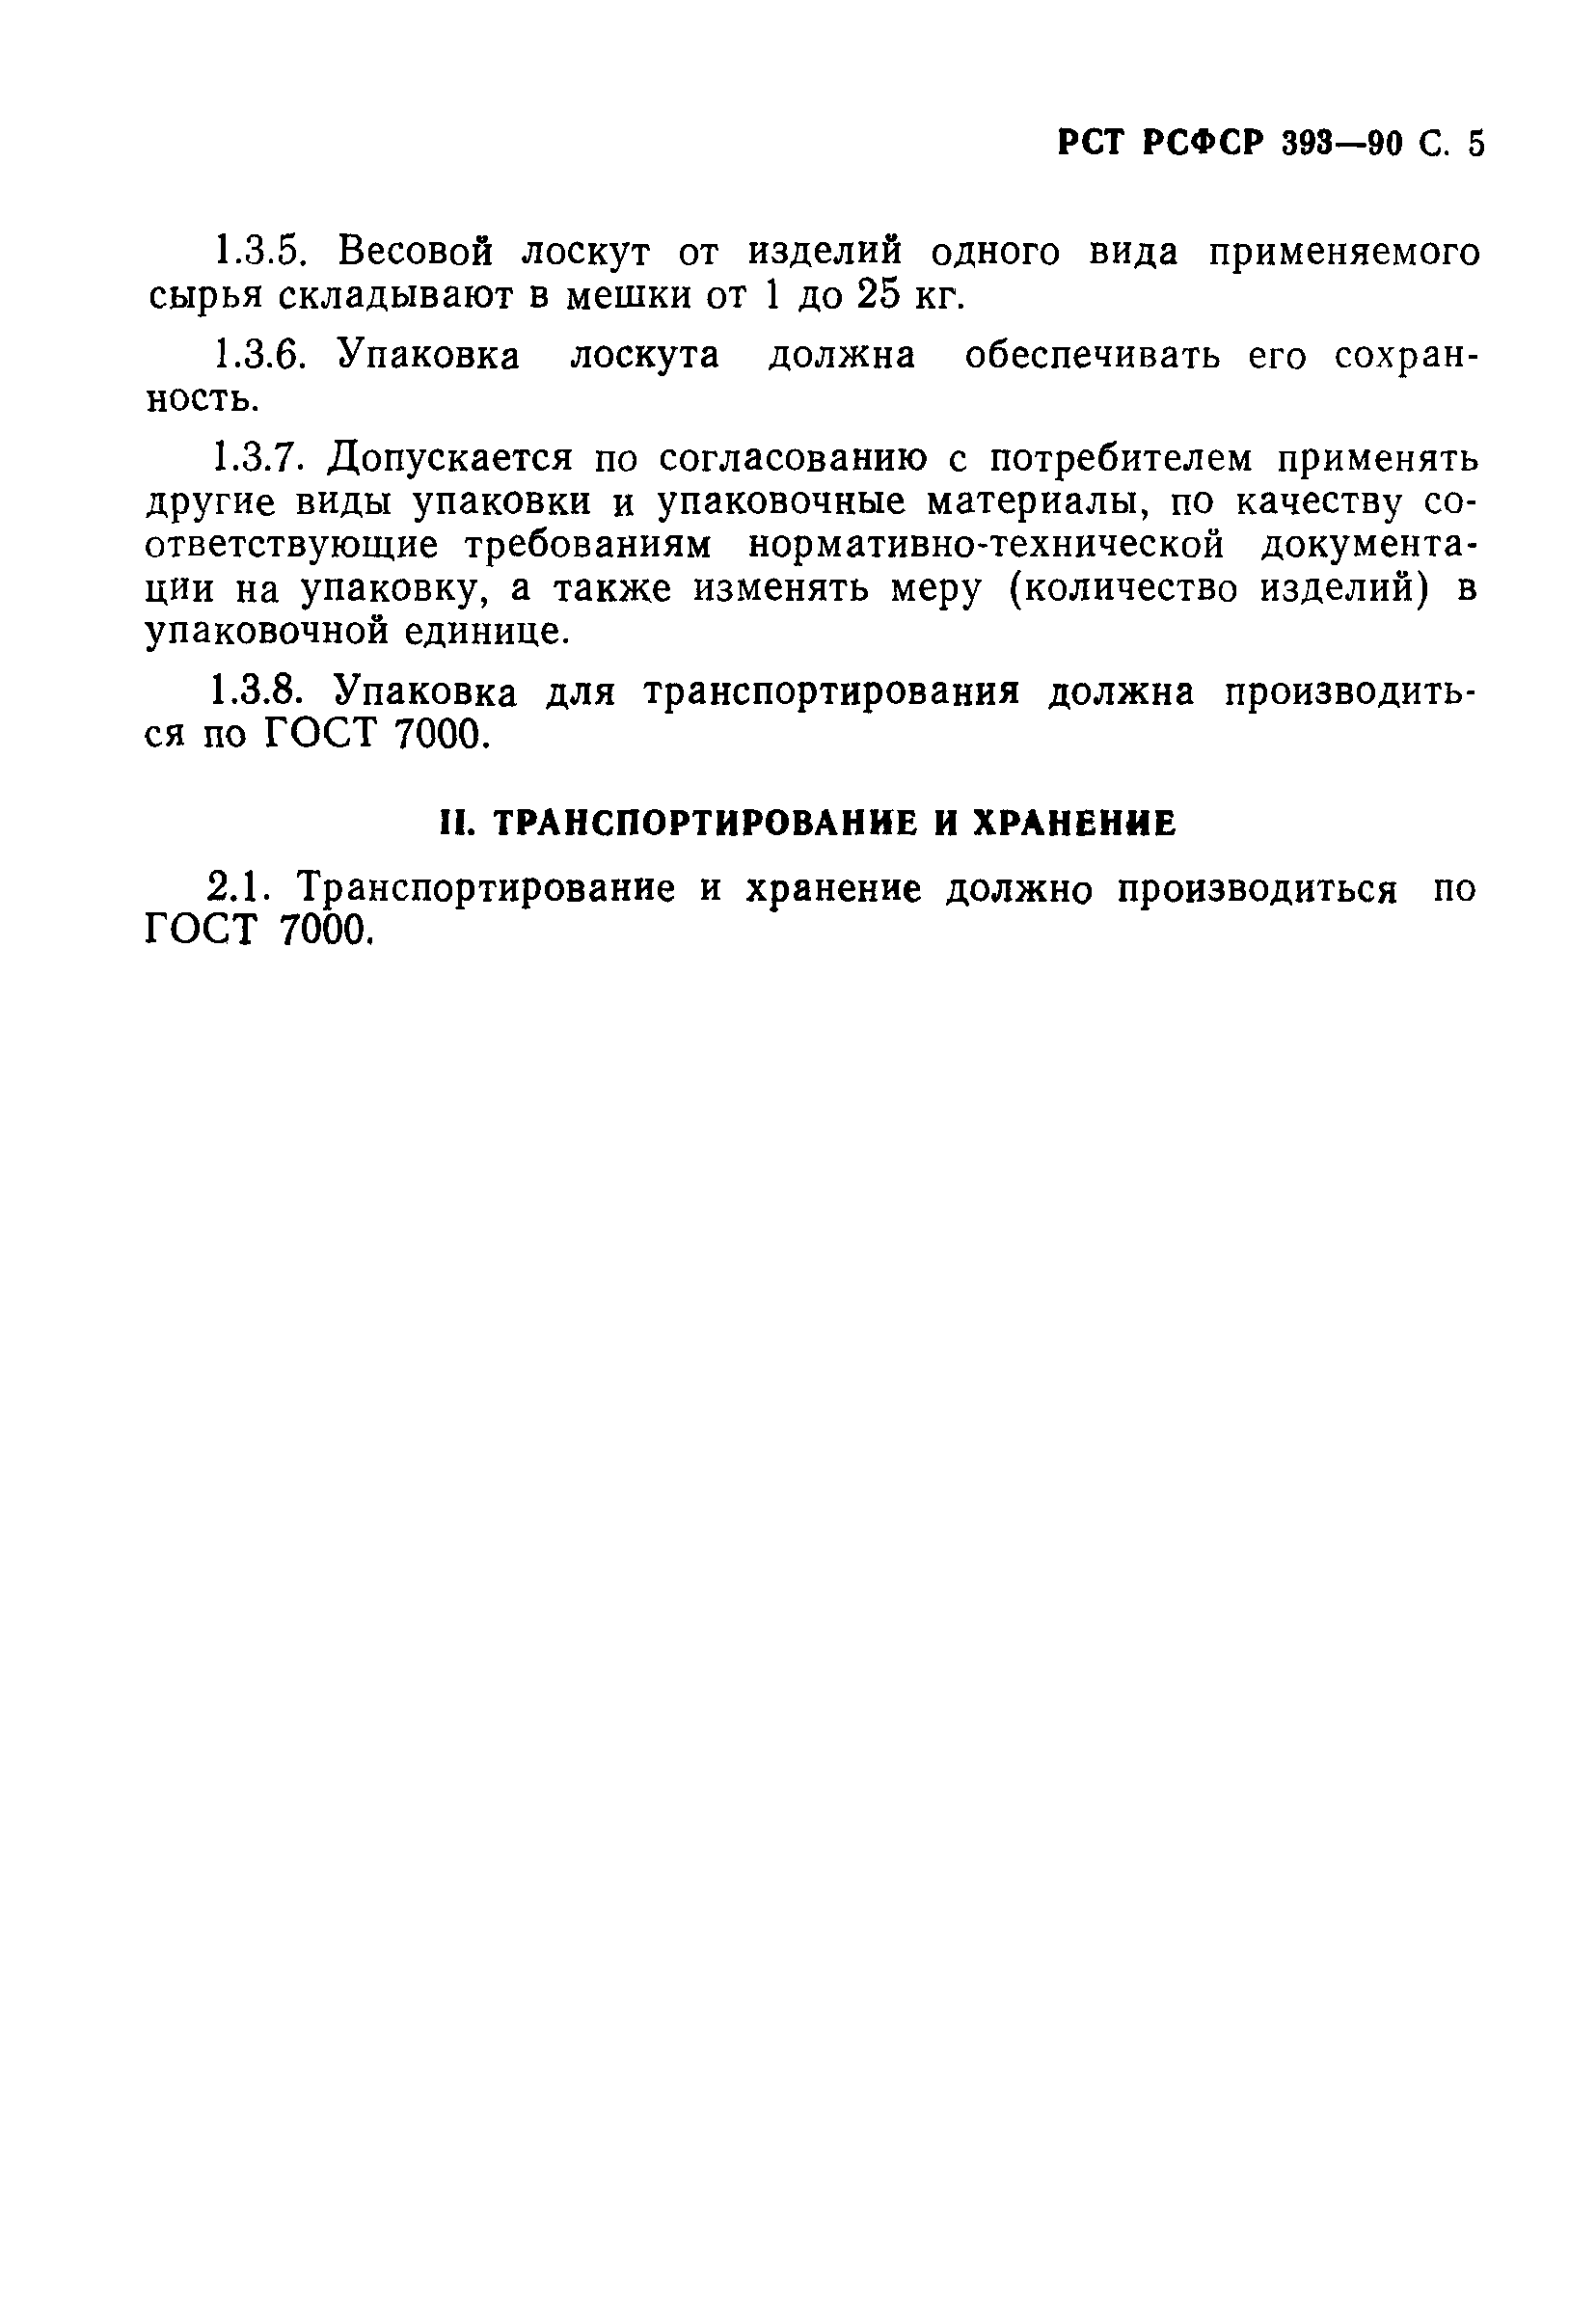 РСТ РСФСР 393-90